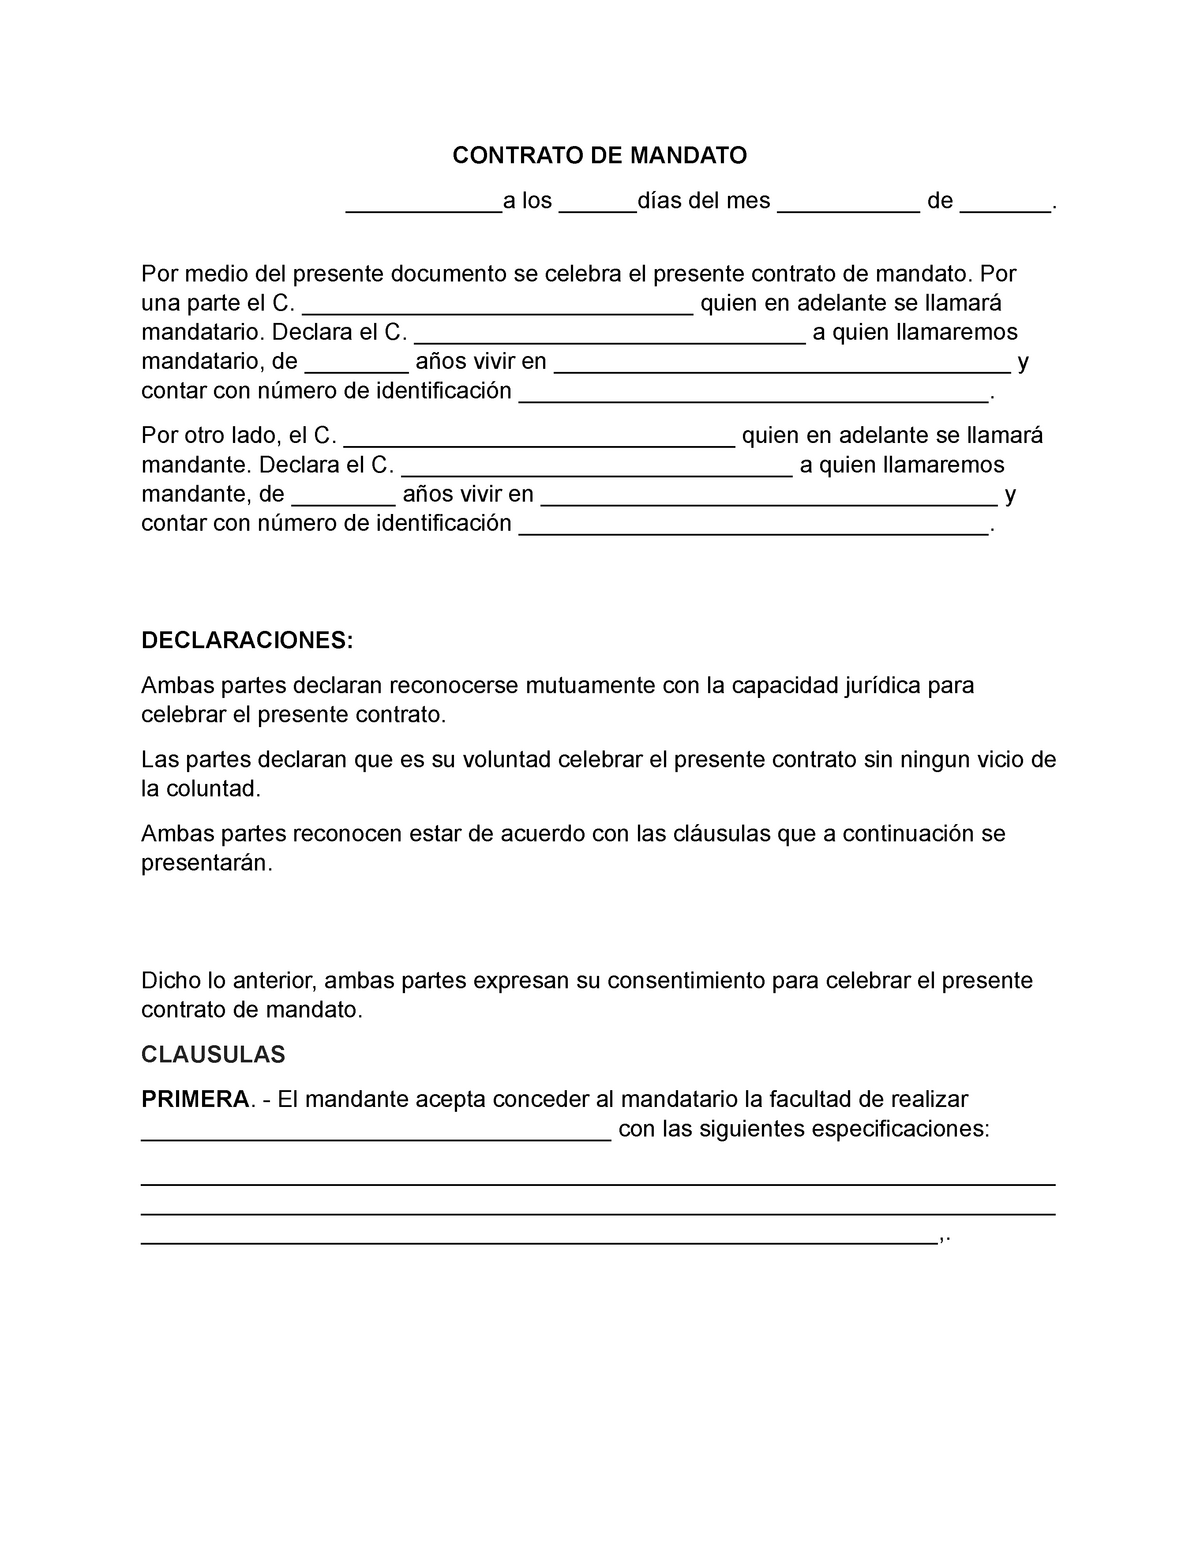 Formato de contrato de mandato - CONTRATO DE MANDATO ____________a los  ______días del mes - Studocu